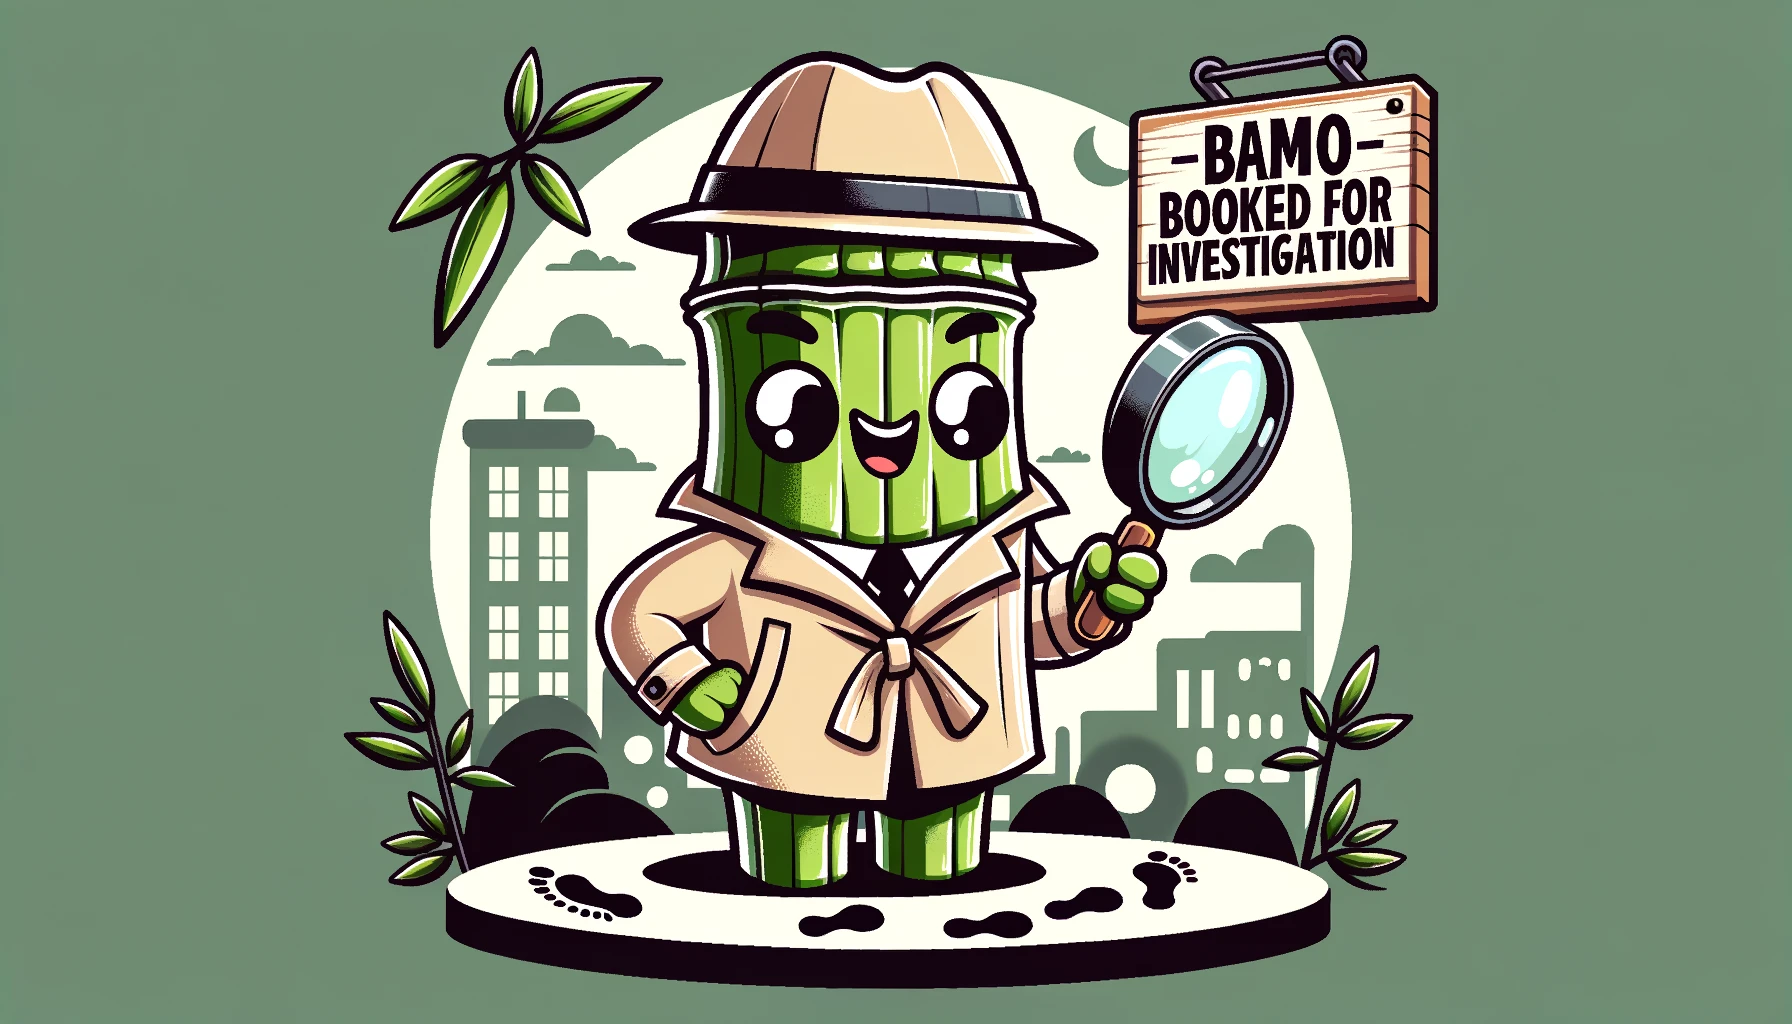 Bamboo detective - Bamboo Pun